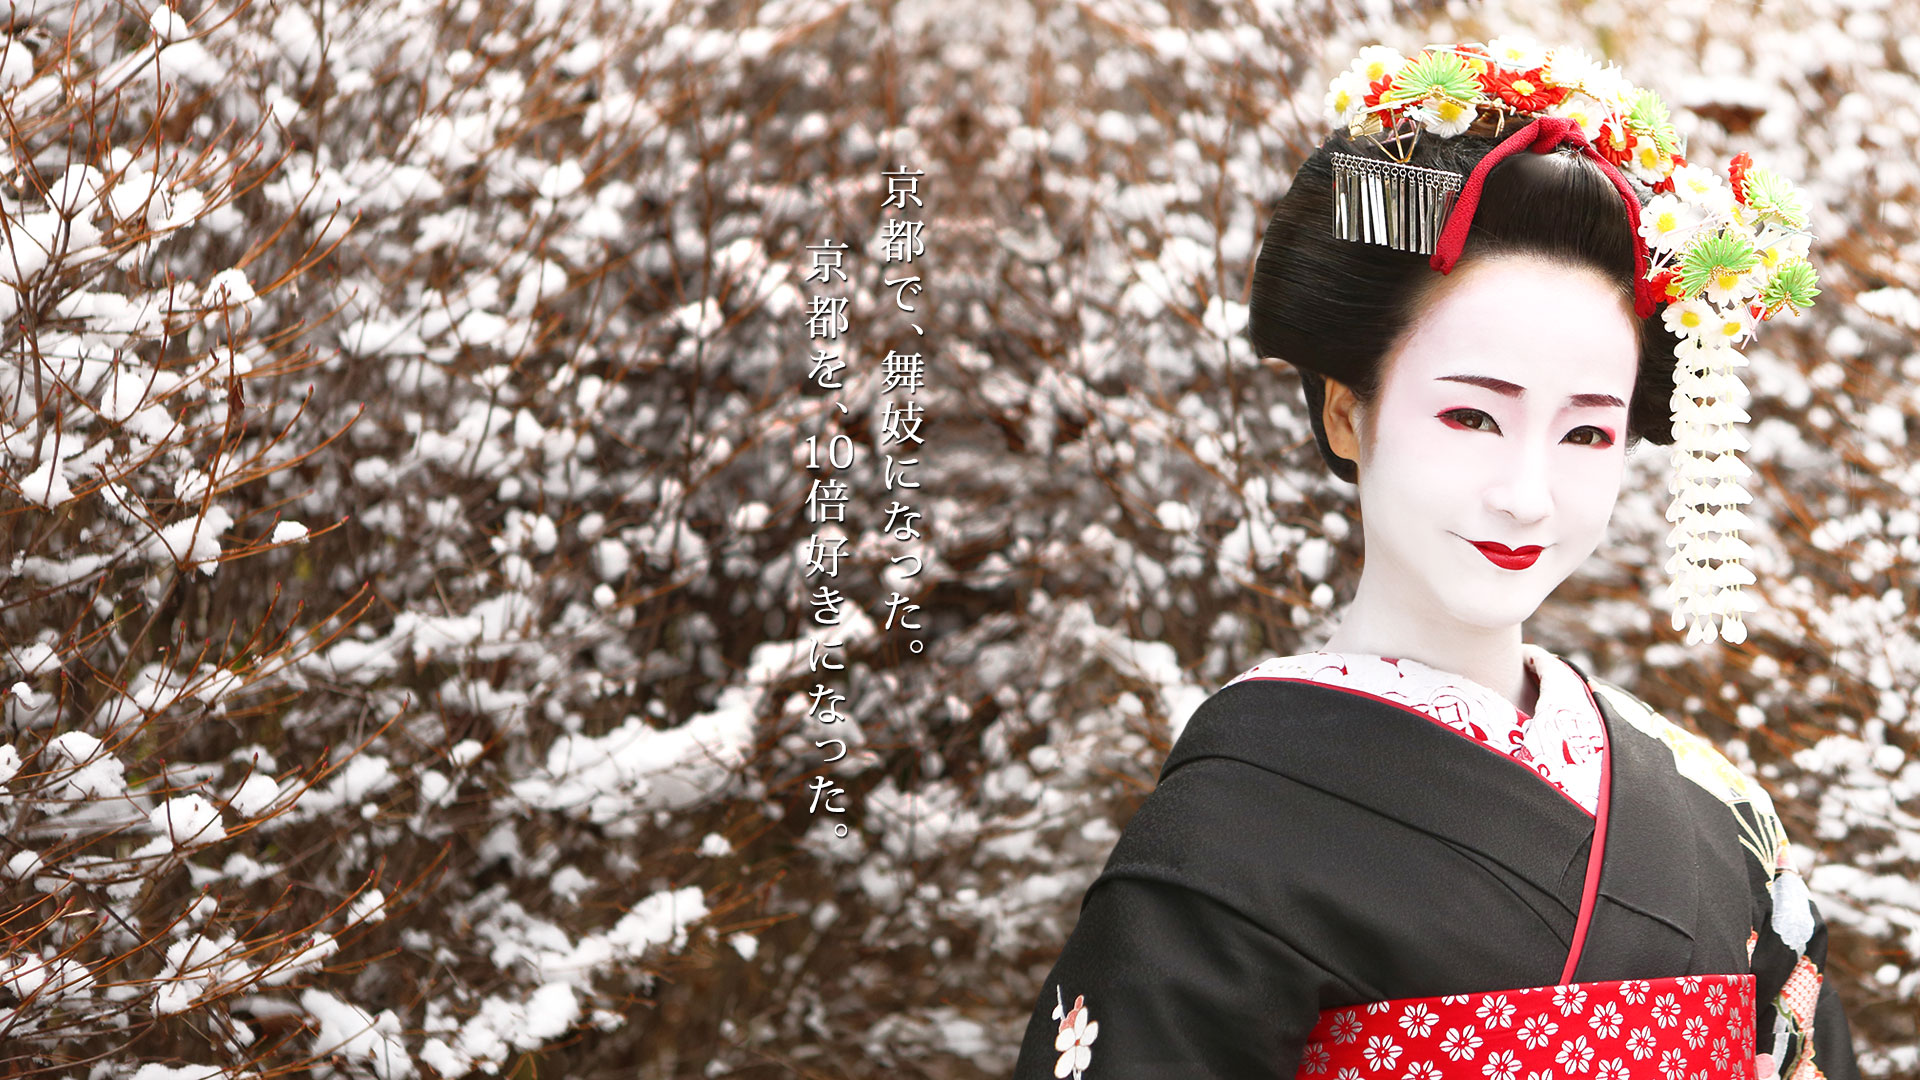 Костюмированное новогоднее поздравление от "японской гейши" – музыкальное и веселое новогоднее поздравление от гостя, переодетого в японский костюм